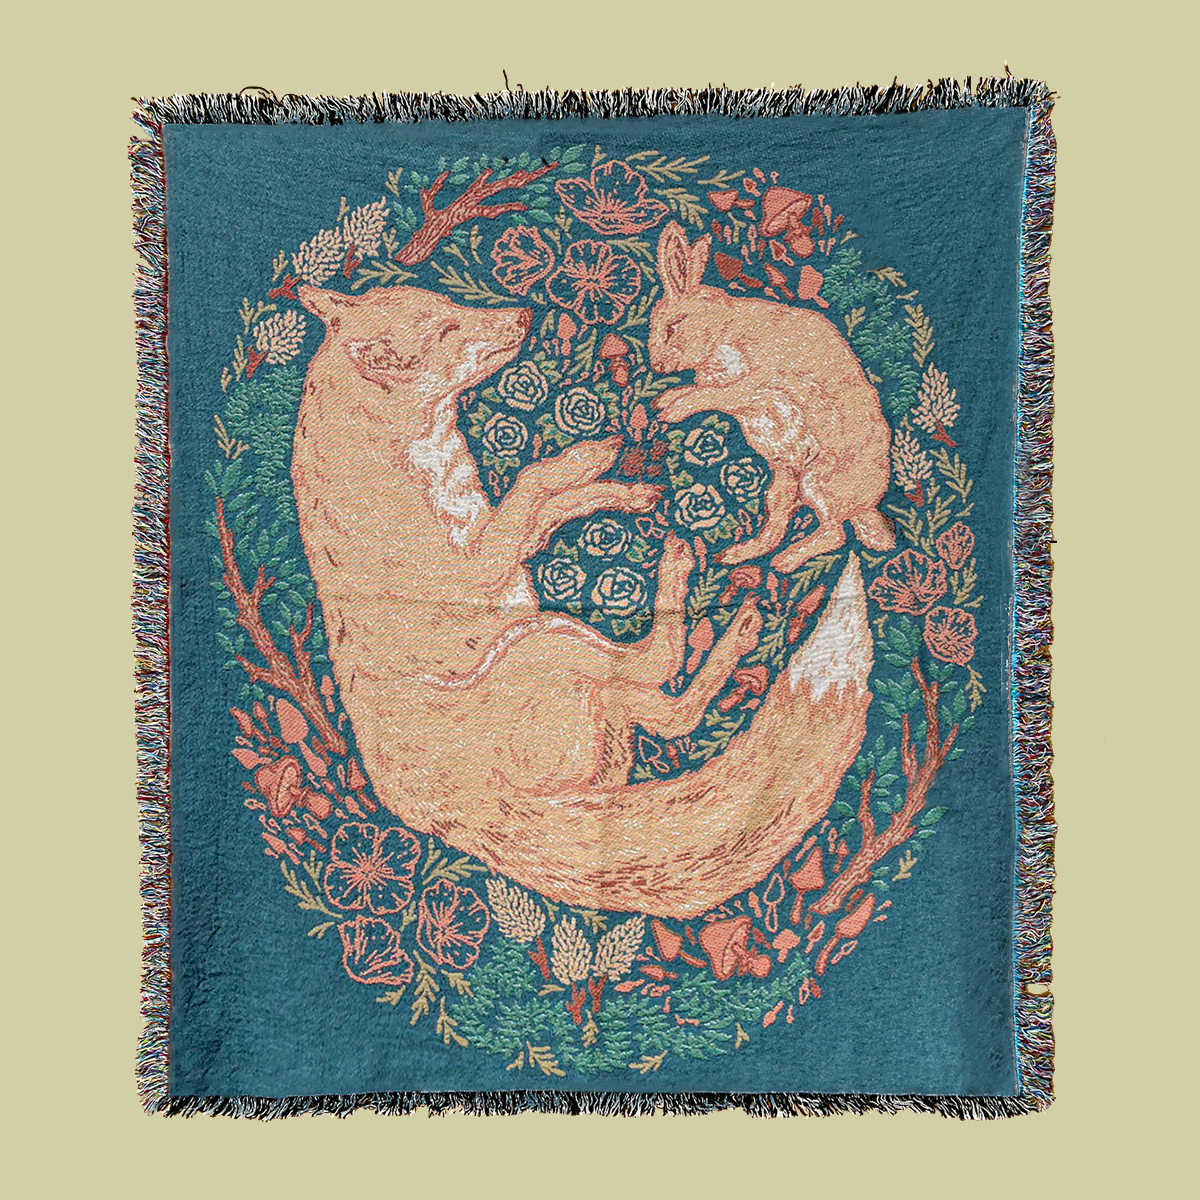 Woven Blanket Tapestry: Fox & Hare